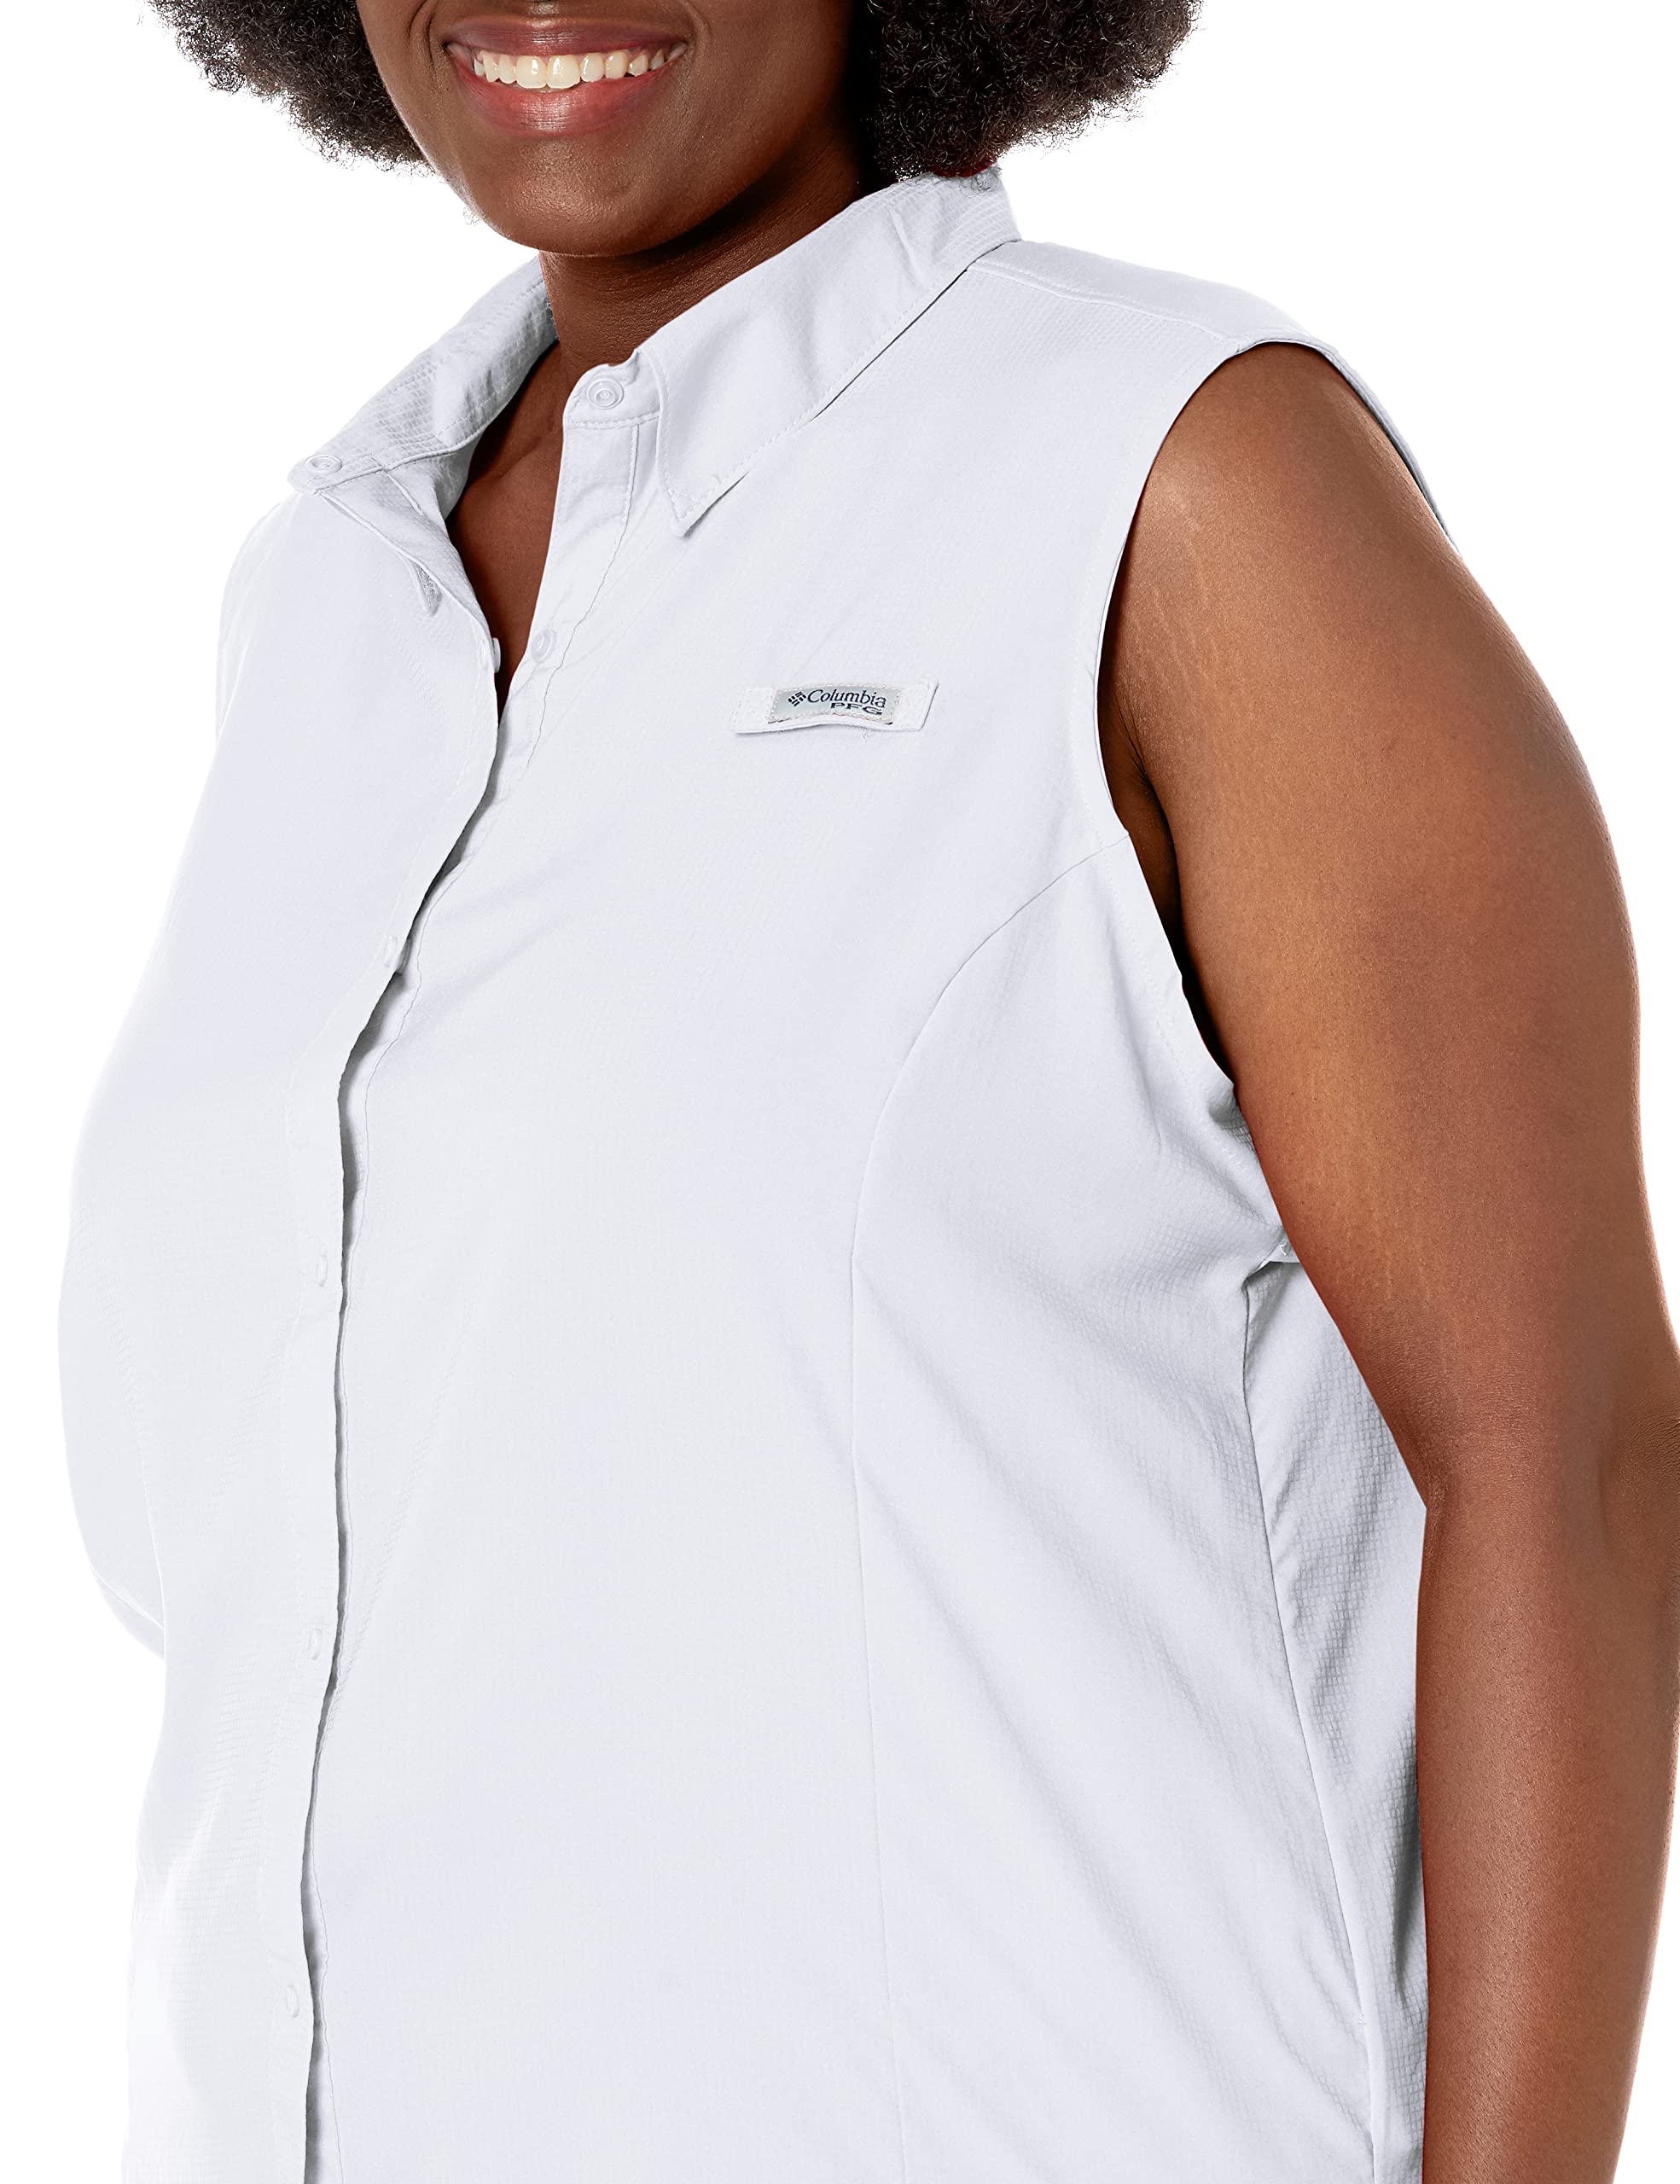 Columbia Women's Tamiami Sleeveless Shirt